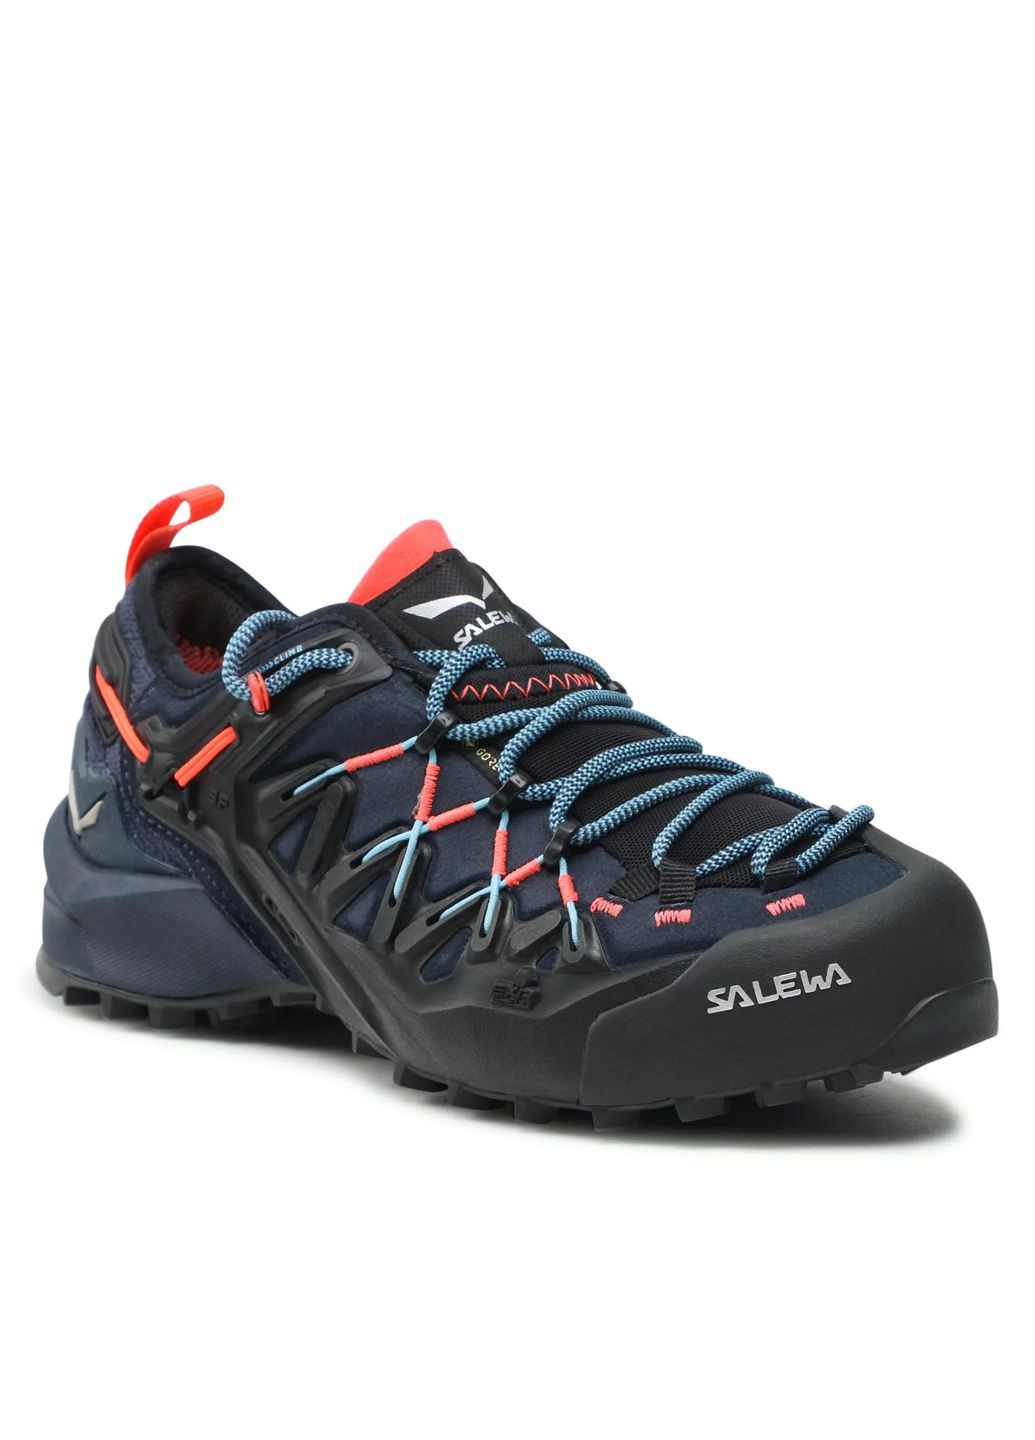 Цветные демисезонные кроссовки wildfire edge gtx wms синий-черный Salewa